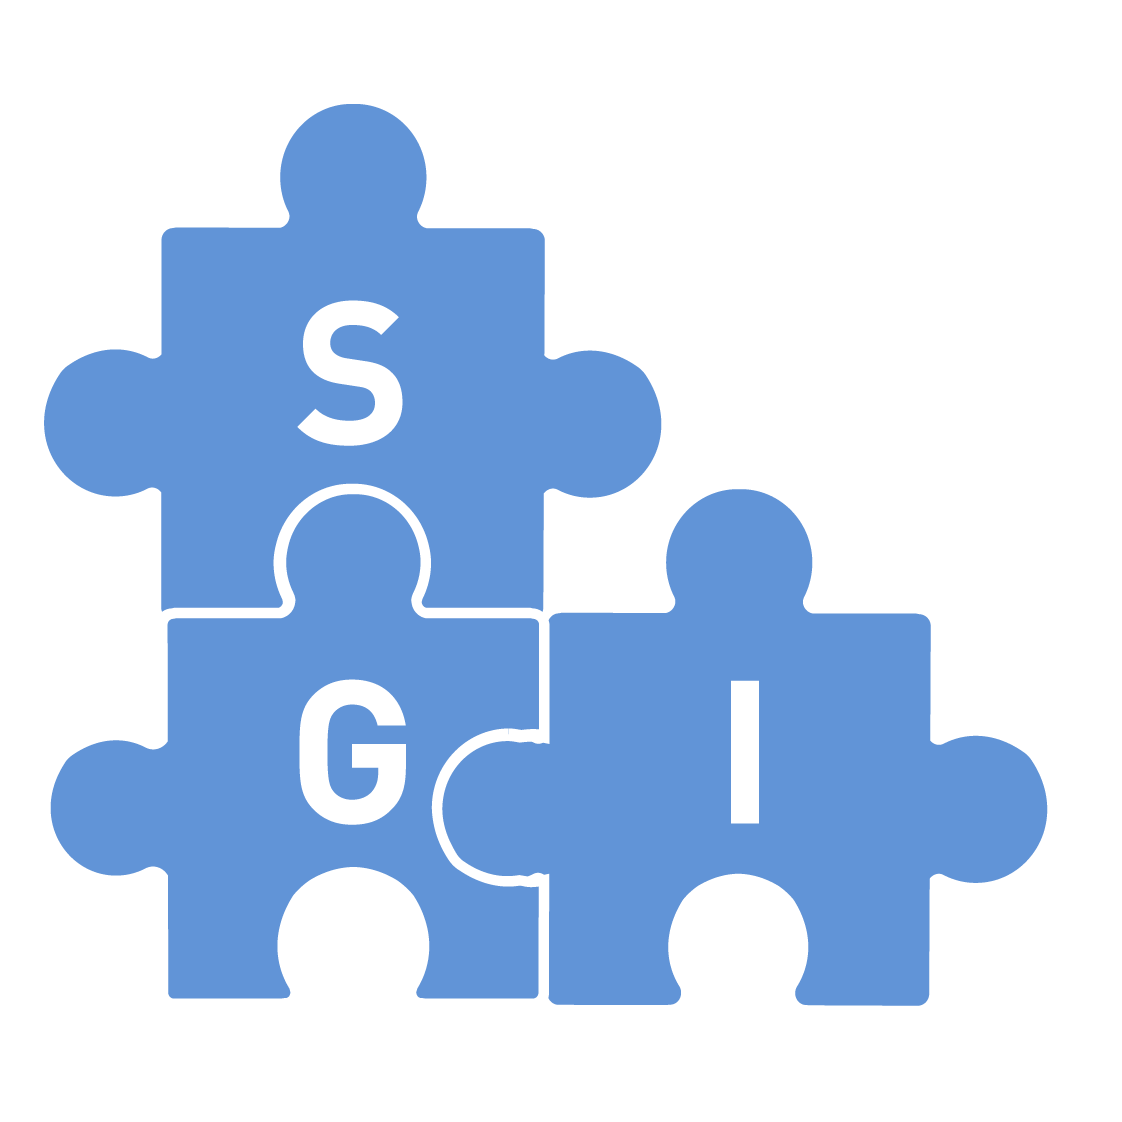 Política del Sistema de Gestión Integrado (SGI)